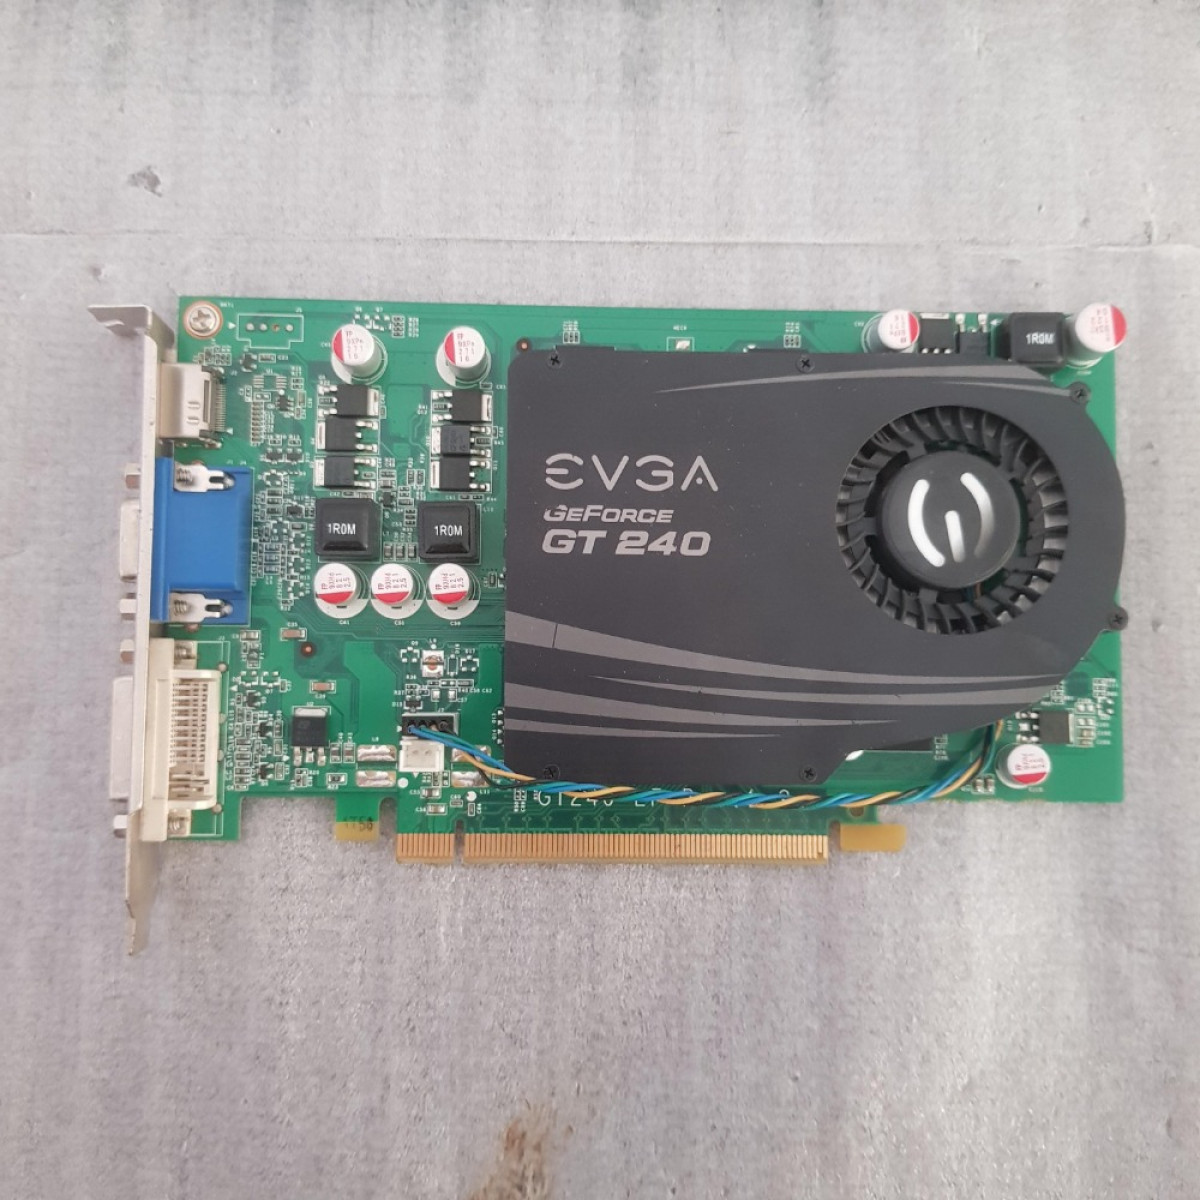 EVGA GeForce GT 240 GT240 512MB GDDR5 128 Bit